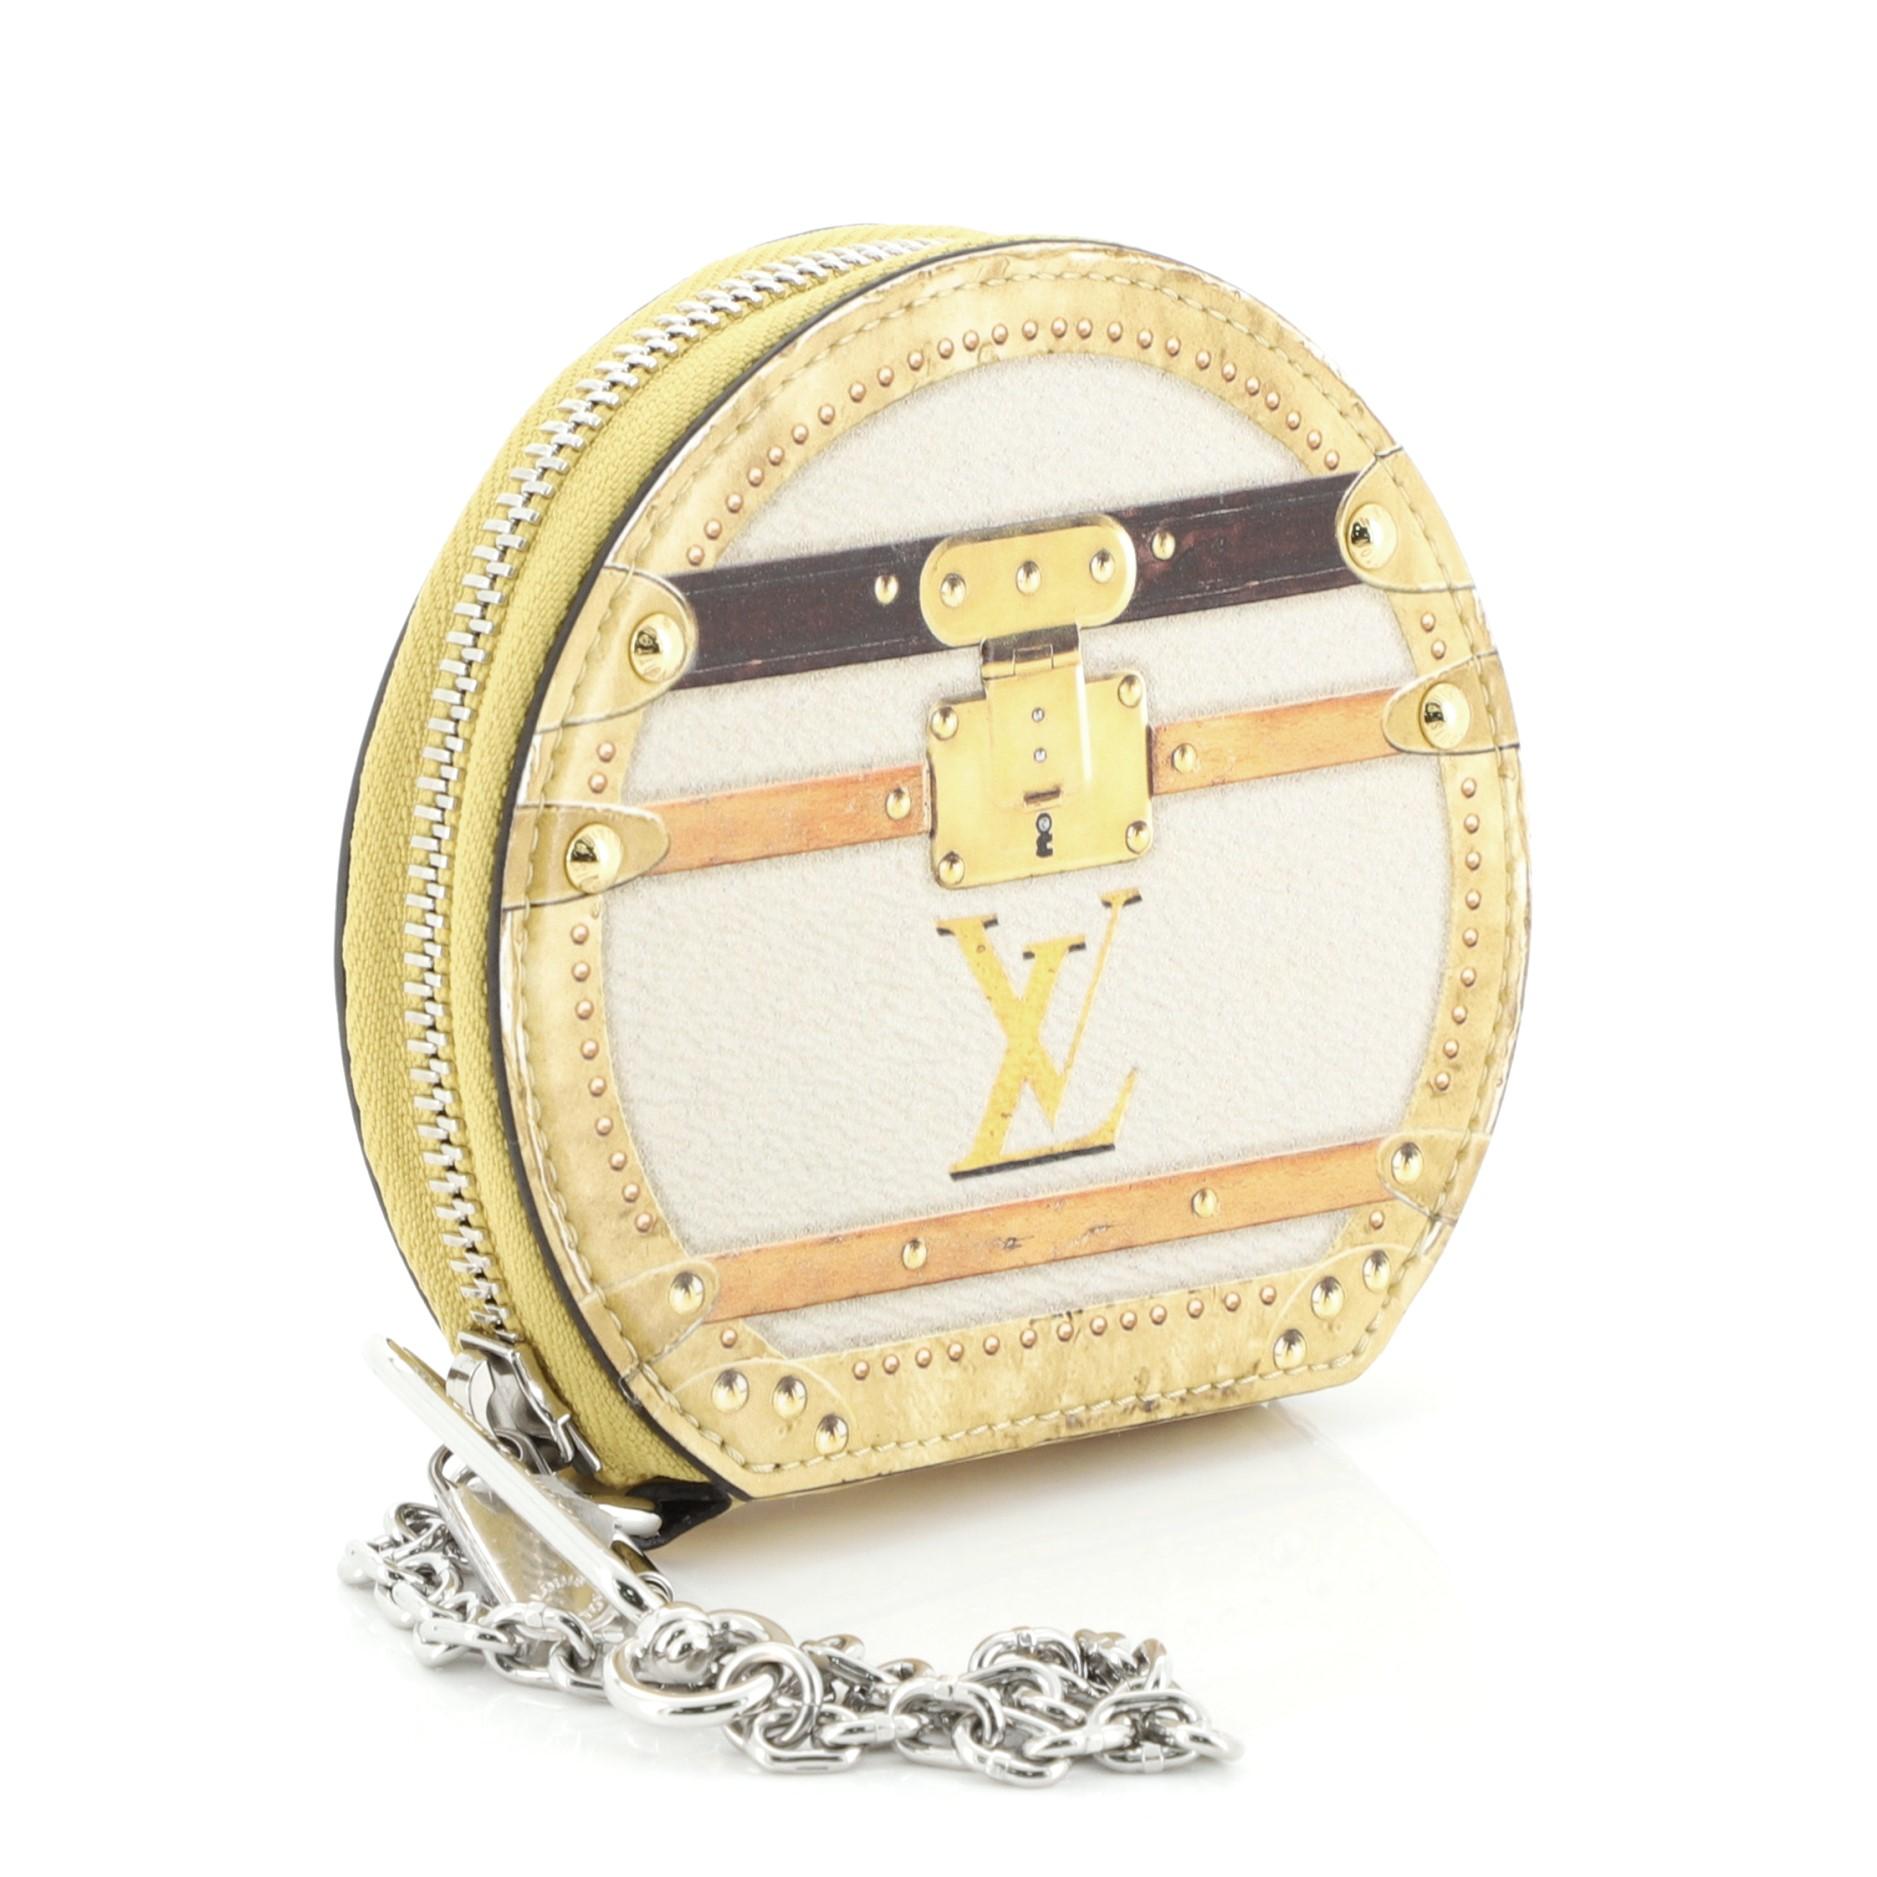 Beige Louis Vuitton Boite Chapeau Coin Purse Limited Edition Time Trunk Monogram